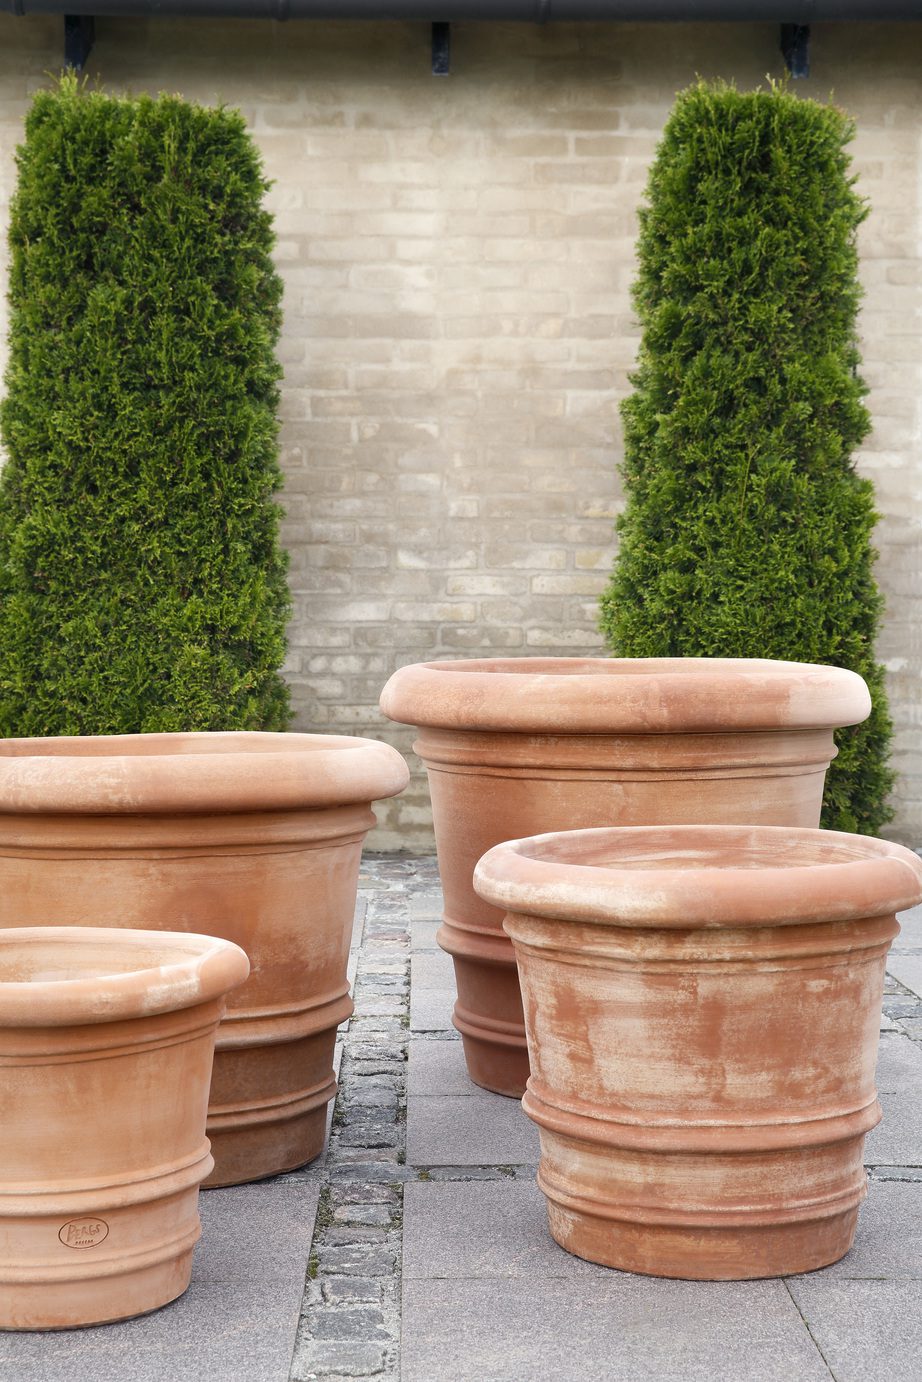 Raw ceramic outdoor pots rose